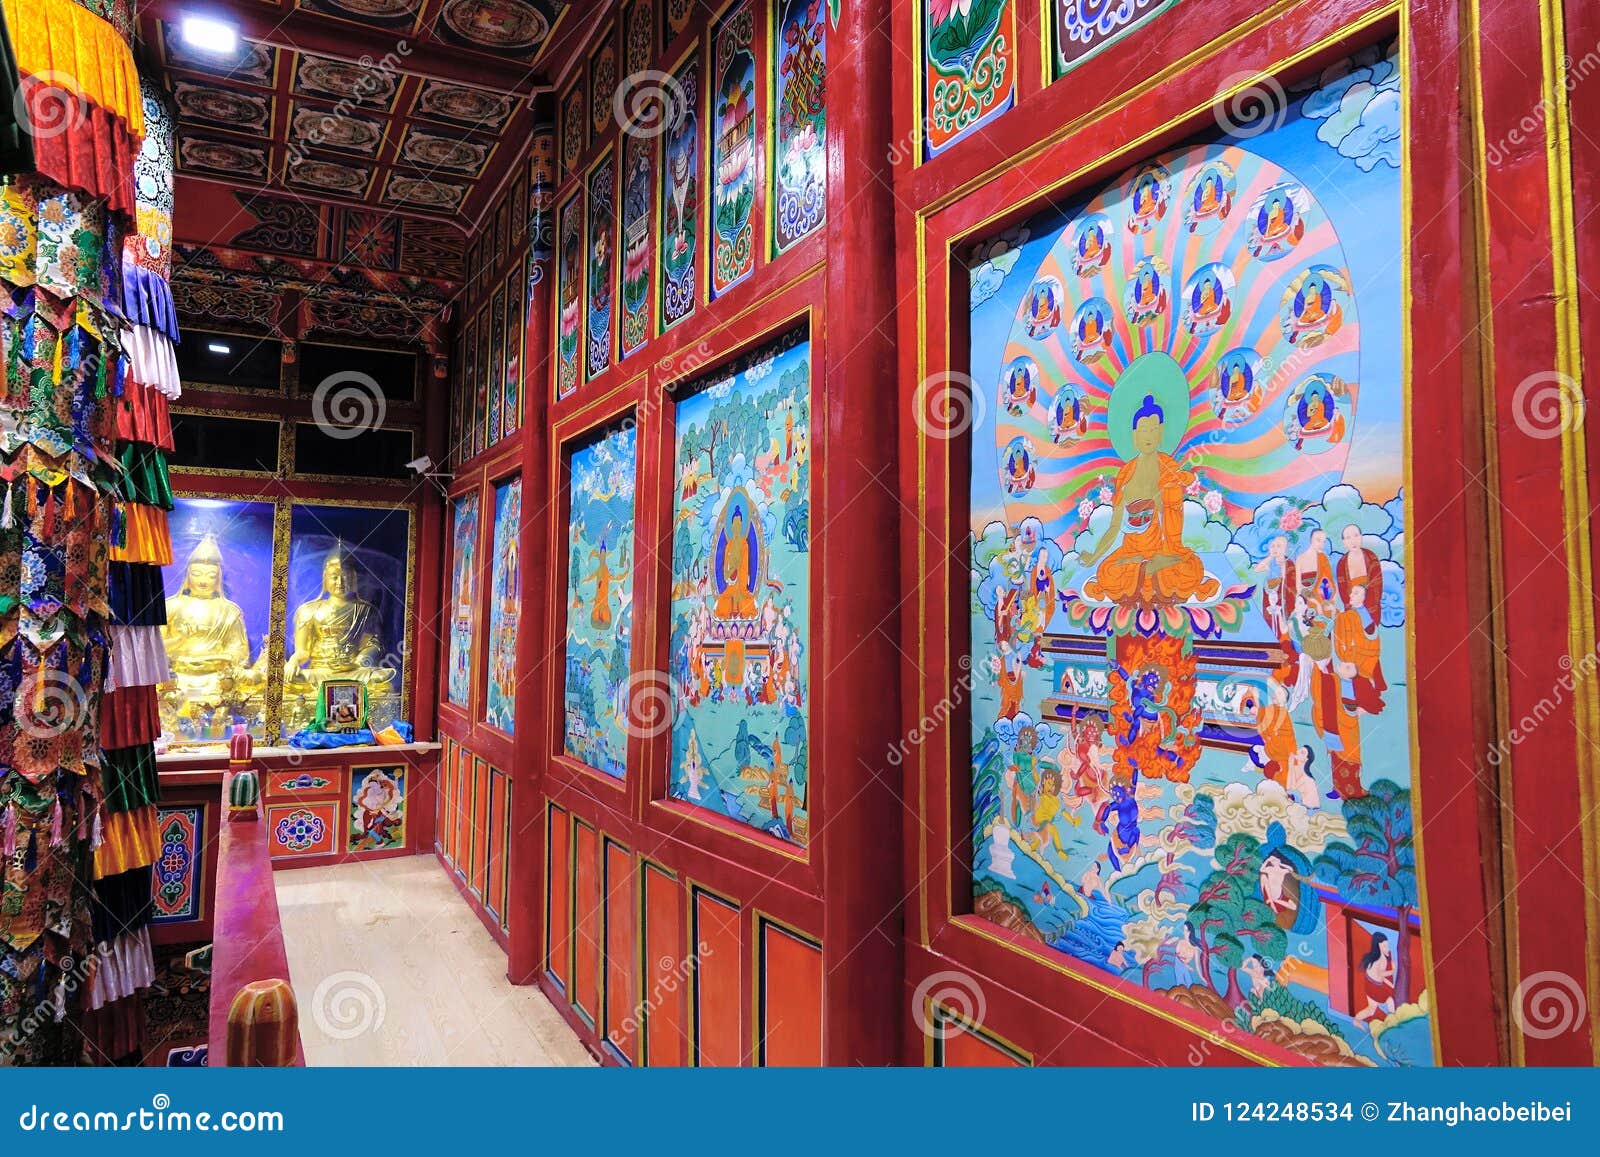 4. Tibetan Buddhist temple tattoo designs - wide 5